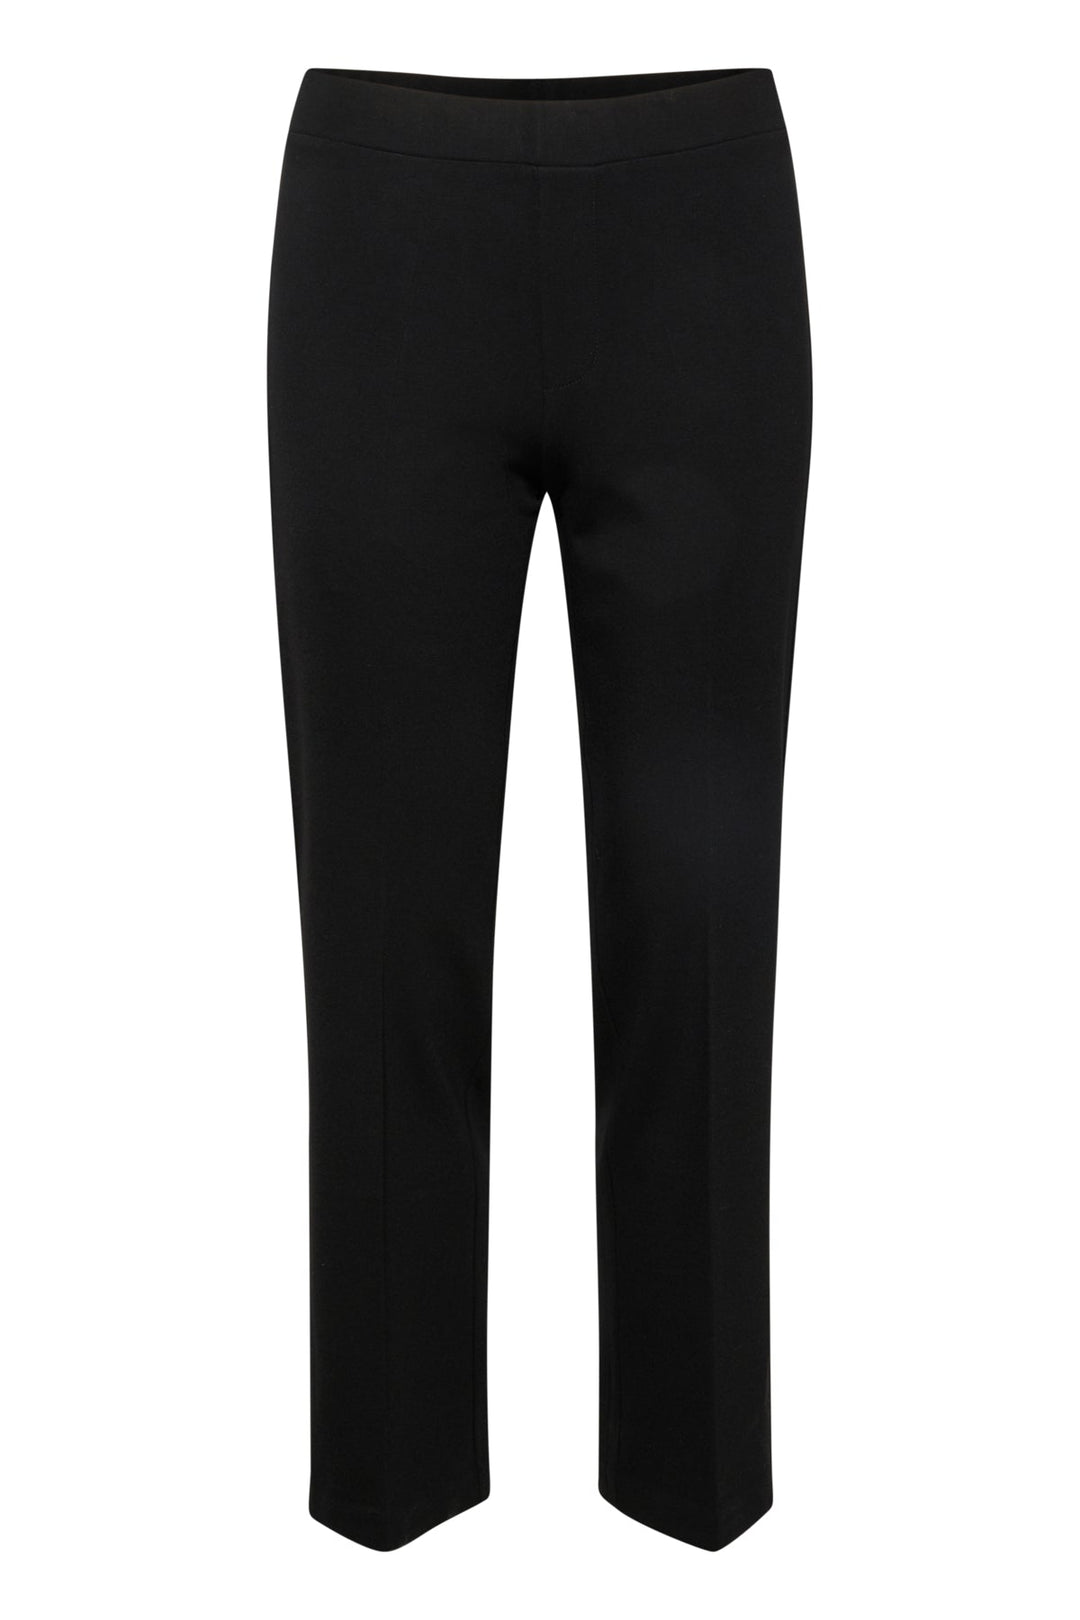 Pontapw Pants Black | Bukser | Smuk - Dameklær på nett